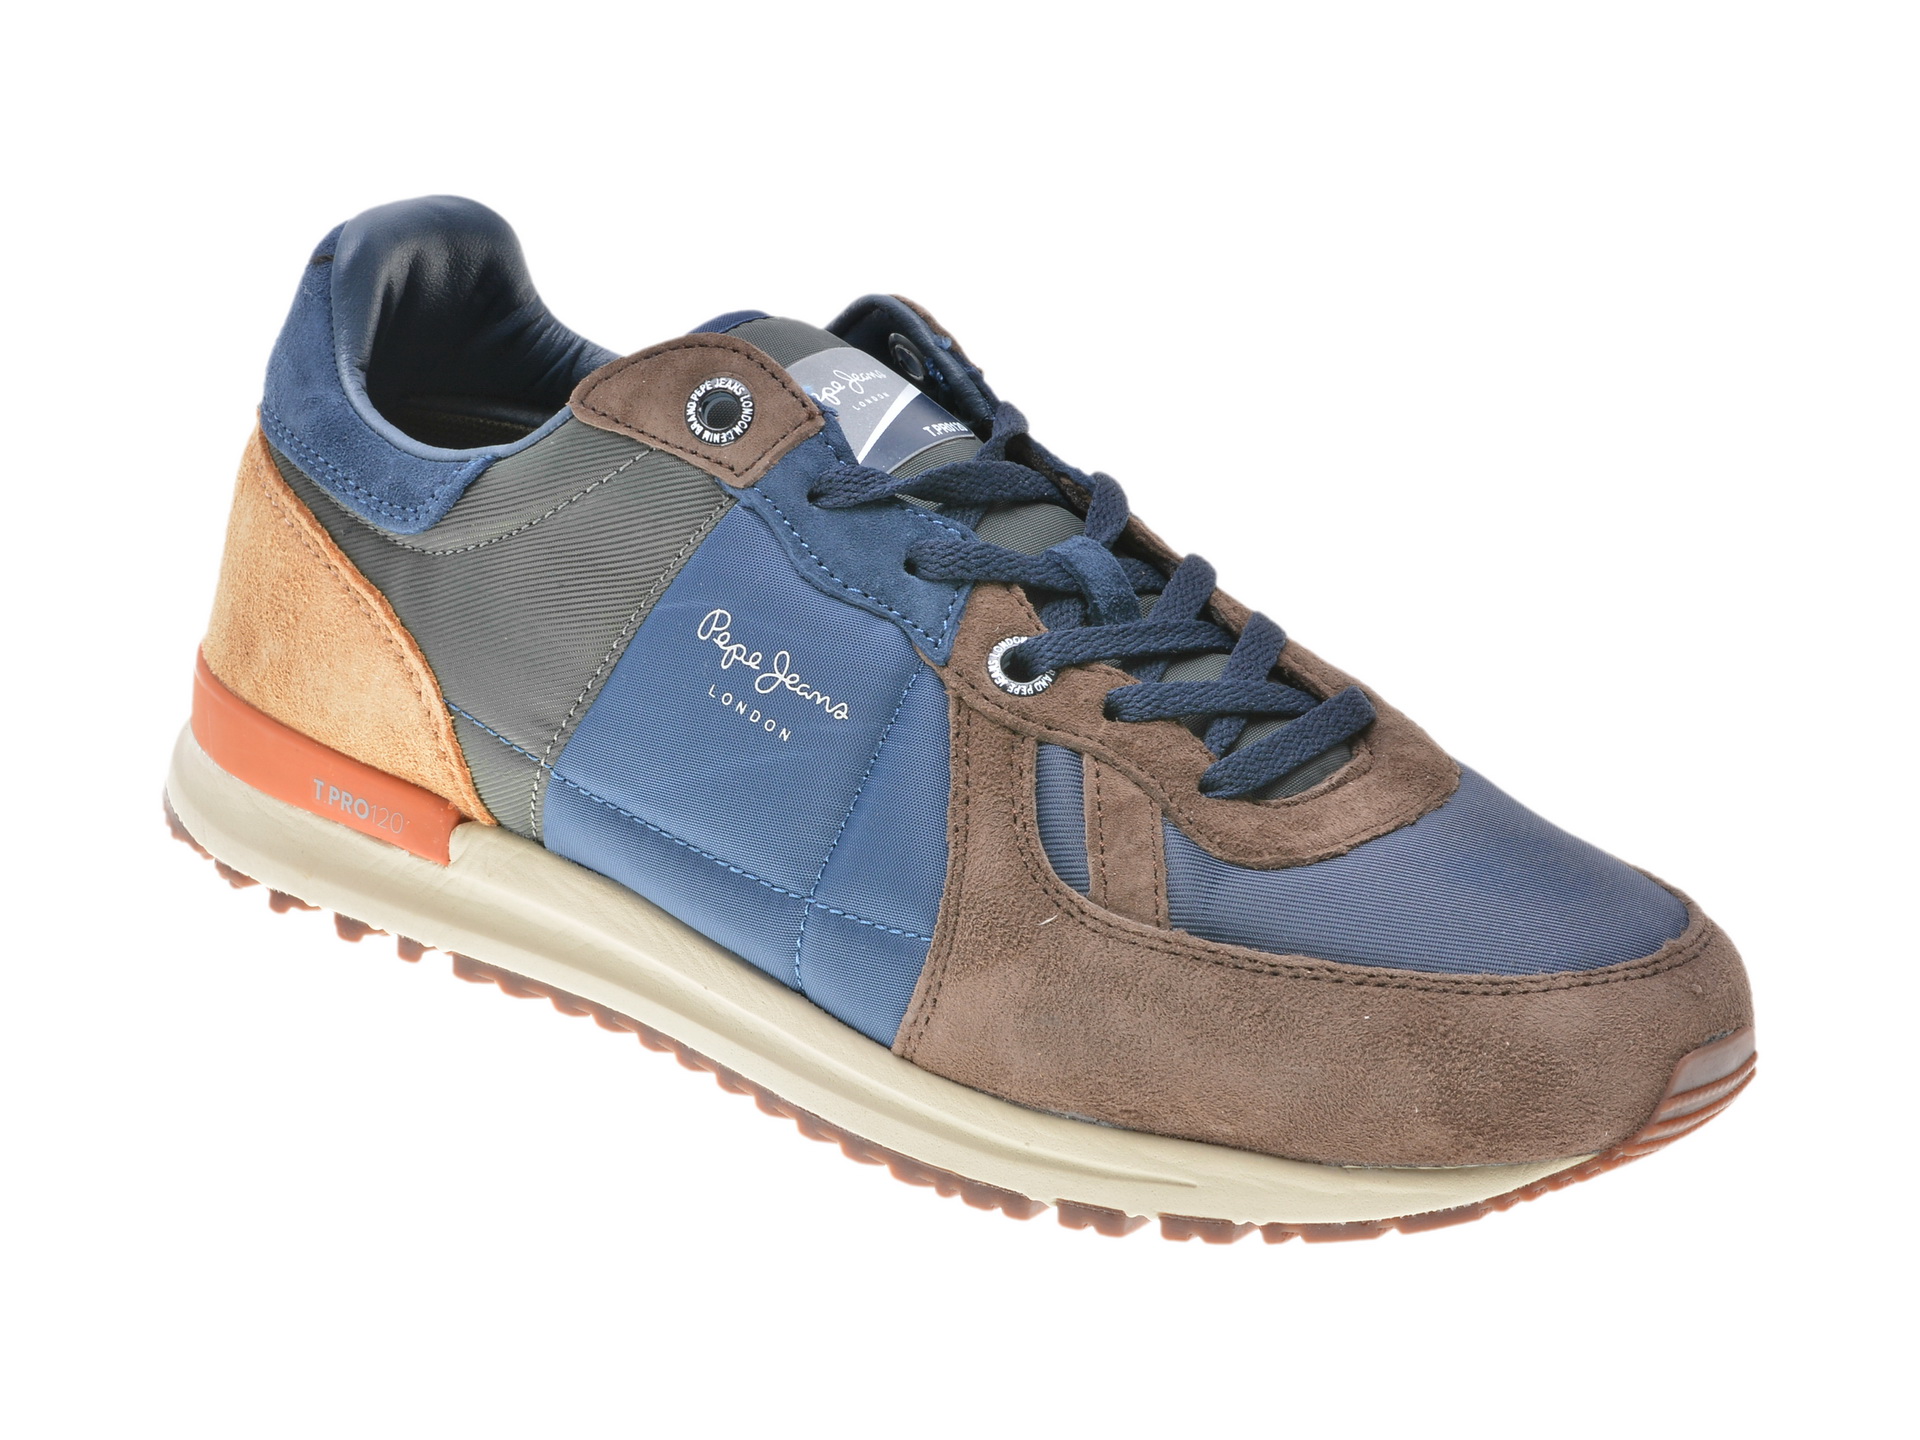 Pantofi sport PEPE JEANS multicolori, Ms30485, din piele intoarsa